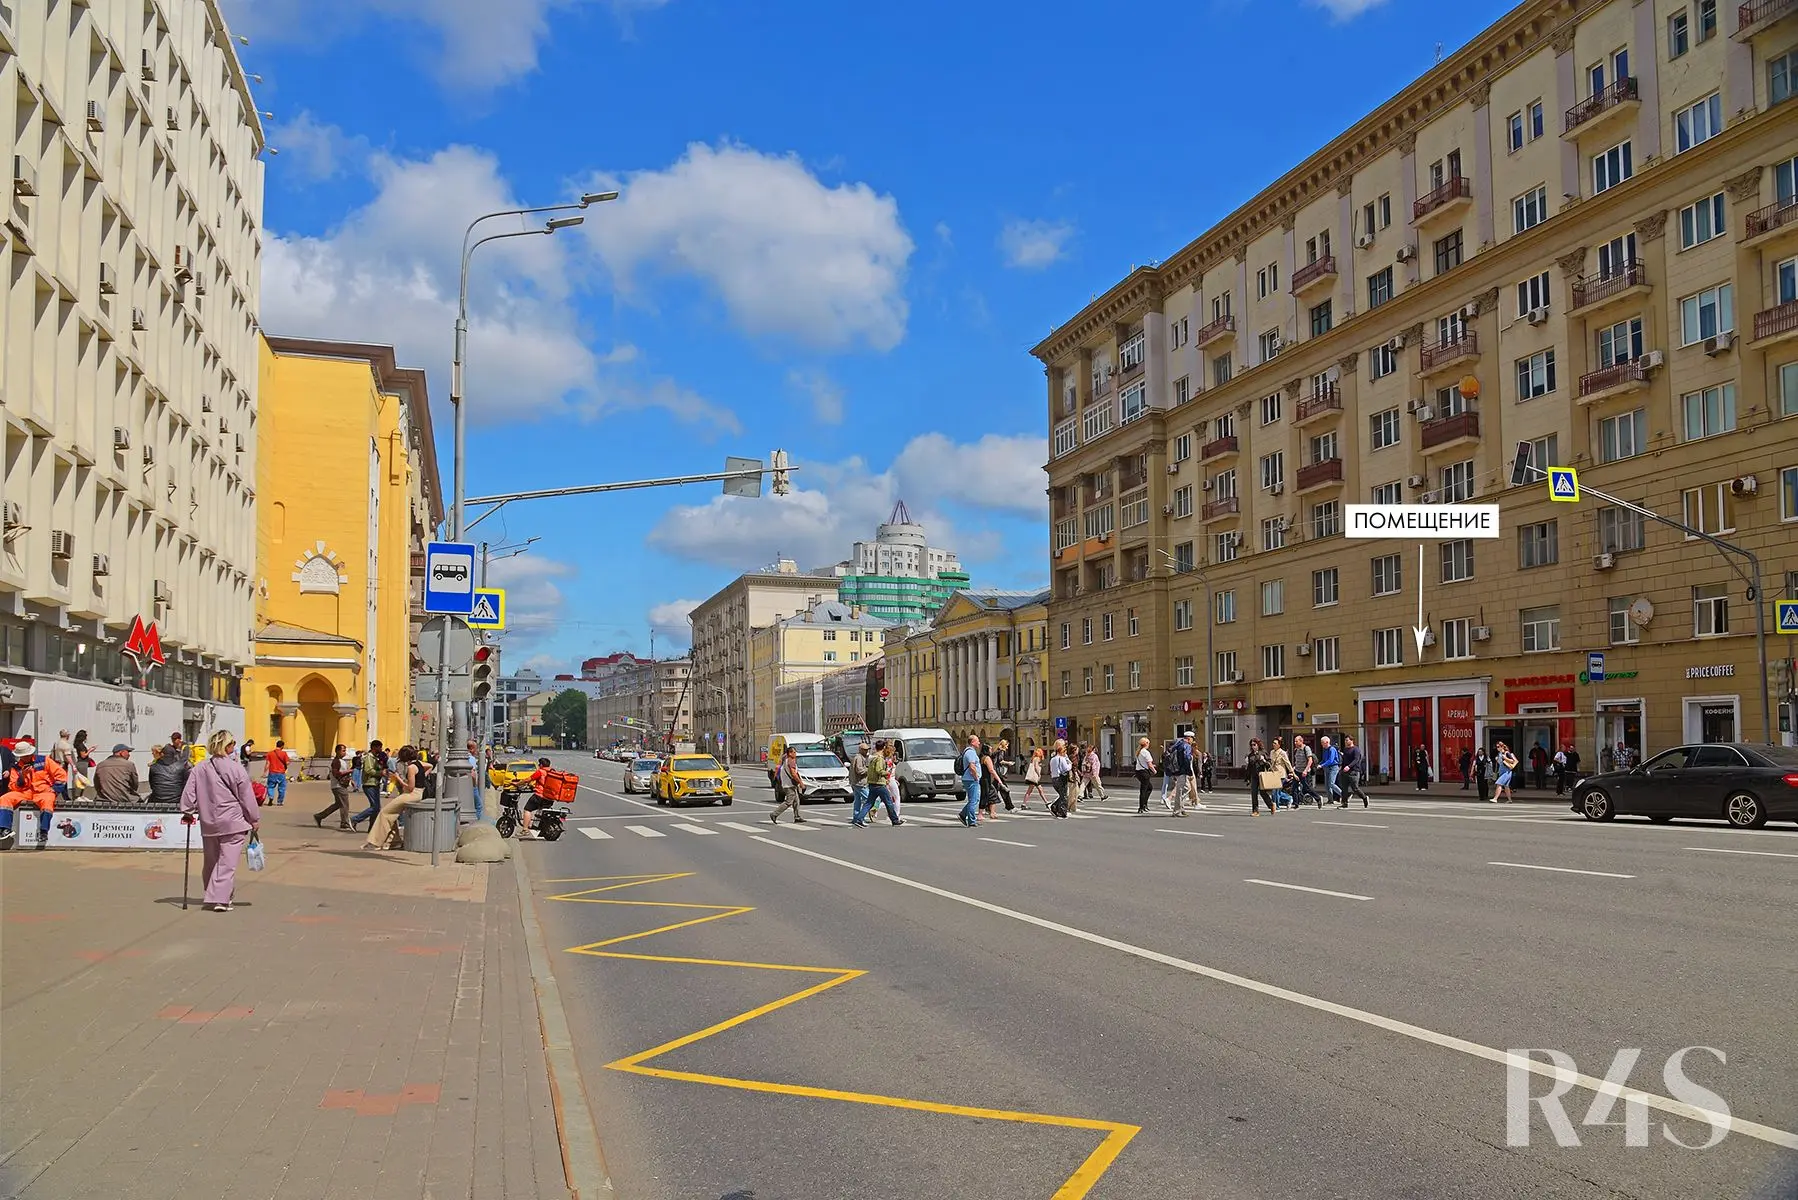 Аренда торговых помещений площадью 74 - 79.8 м2 в Москве:  проспект Мира, 48 R4S | Realty4Sale